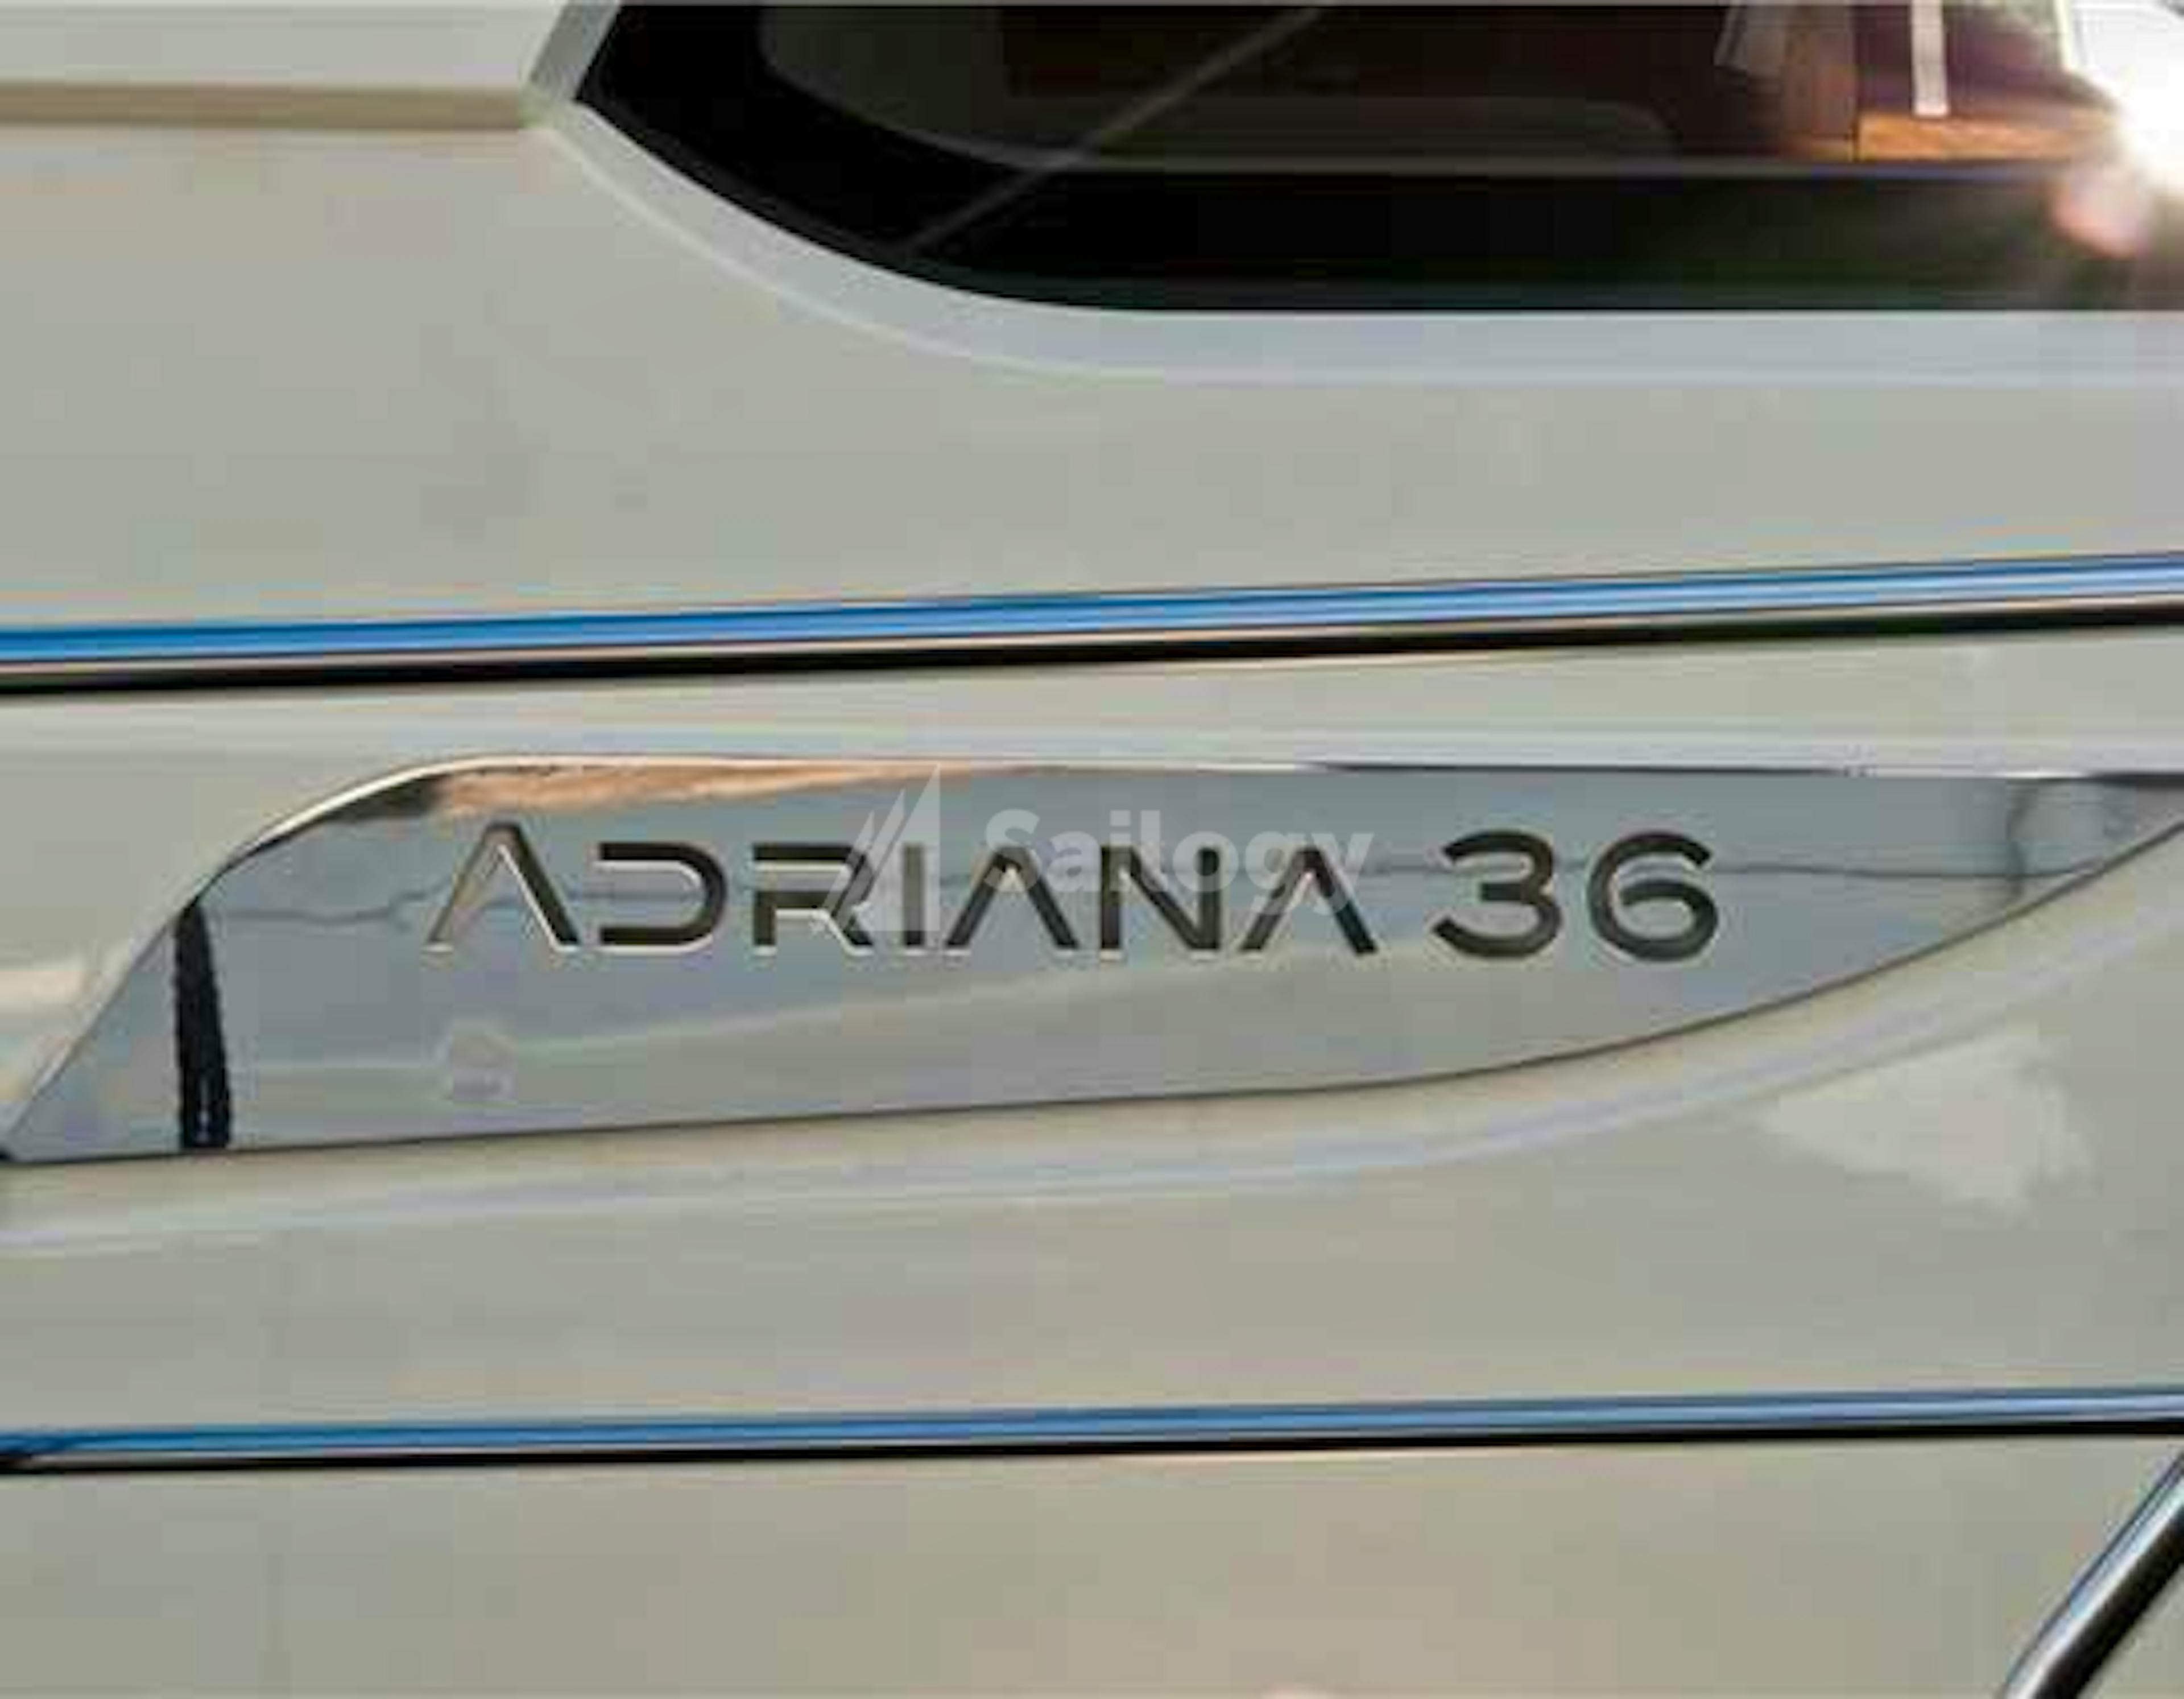 Adriana 36 BT